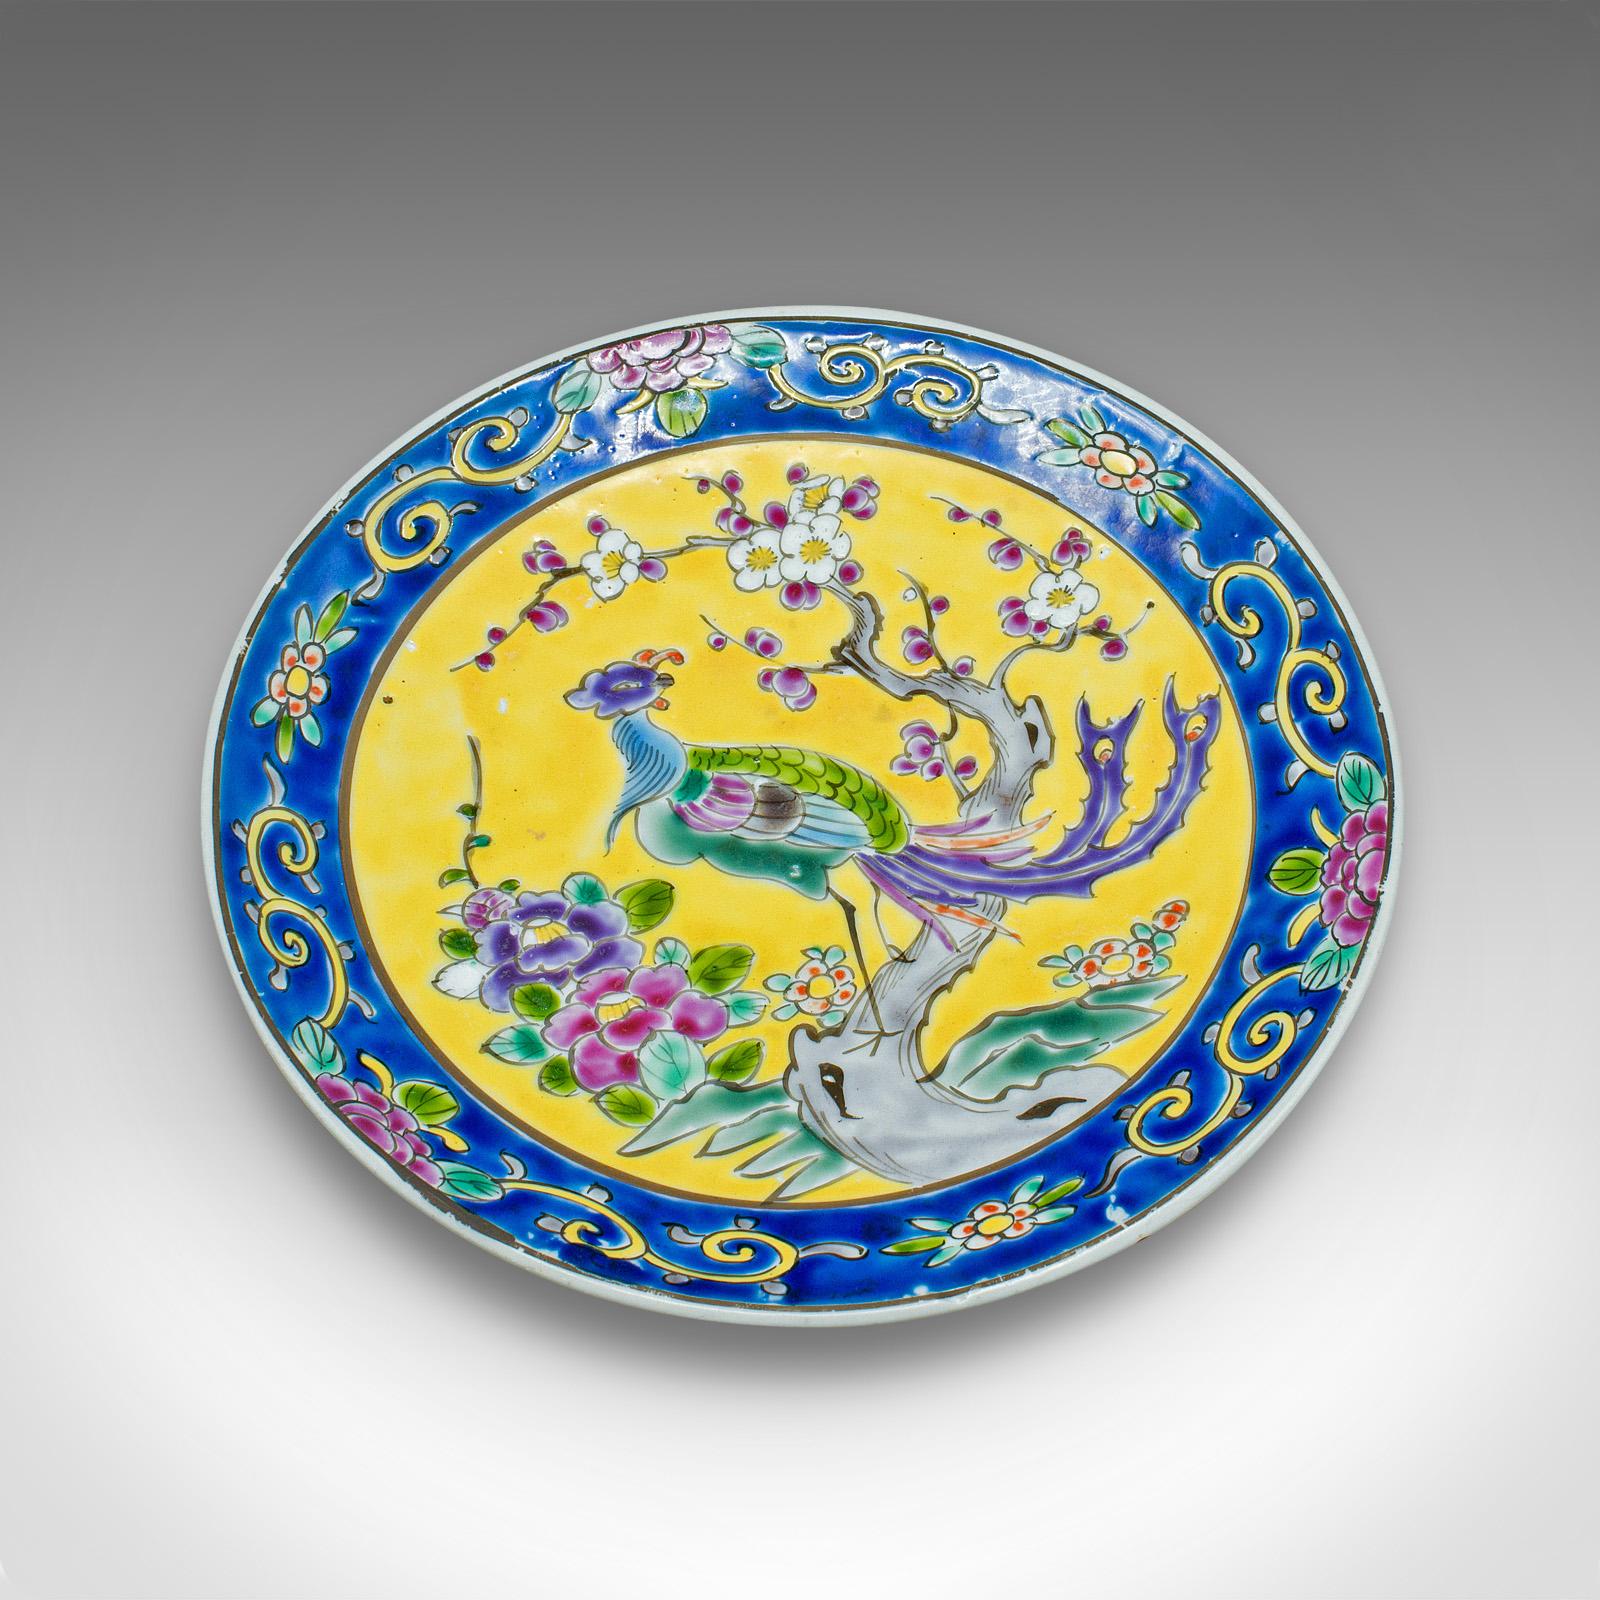 Il s'agit d'une plaque décorative ancienne. Assiette de présentation chinoise en céramique au goût de la Famille Jaune, datant de la fin de la période victorienne, vers 1900.

Plaque d'exposition jaune et bleu cobalt de grande qualité
Présentant